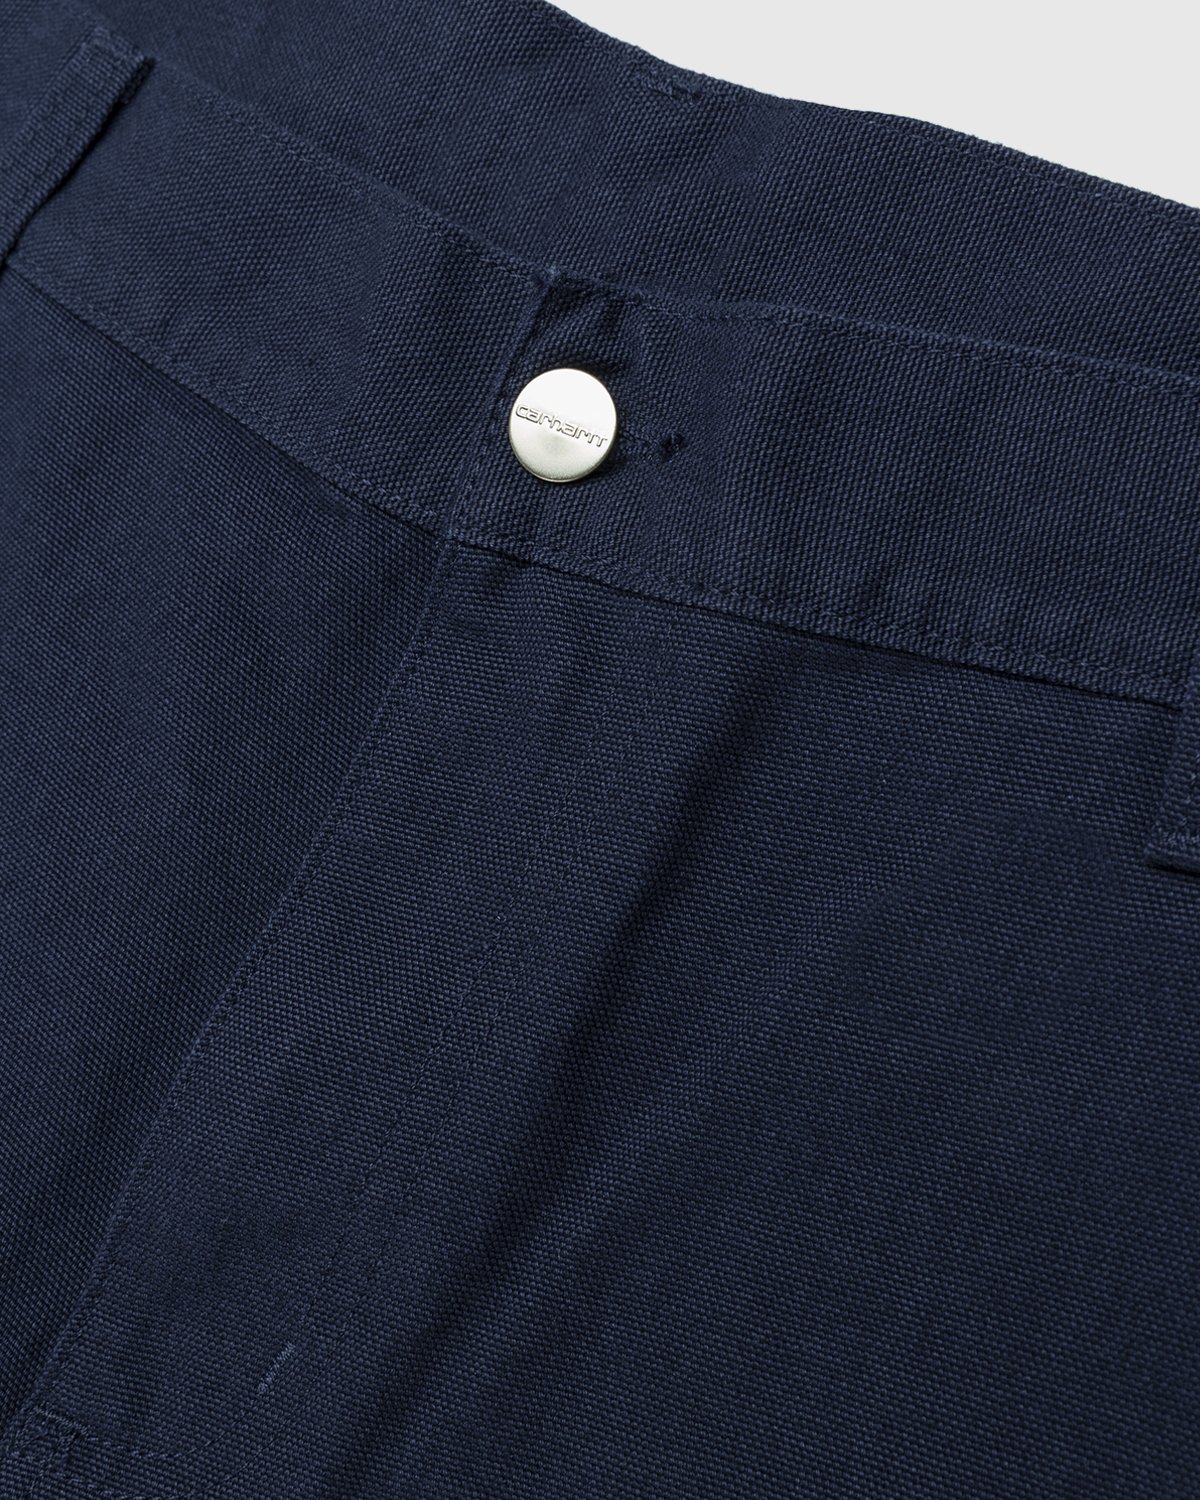 Carhartt WIP - Ruck Single Knee Pant Dark Navy - Clothing - Blue - Image 3